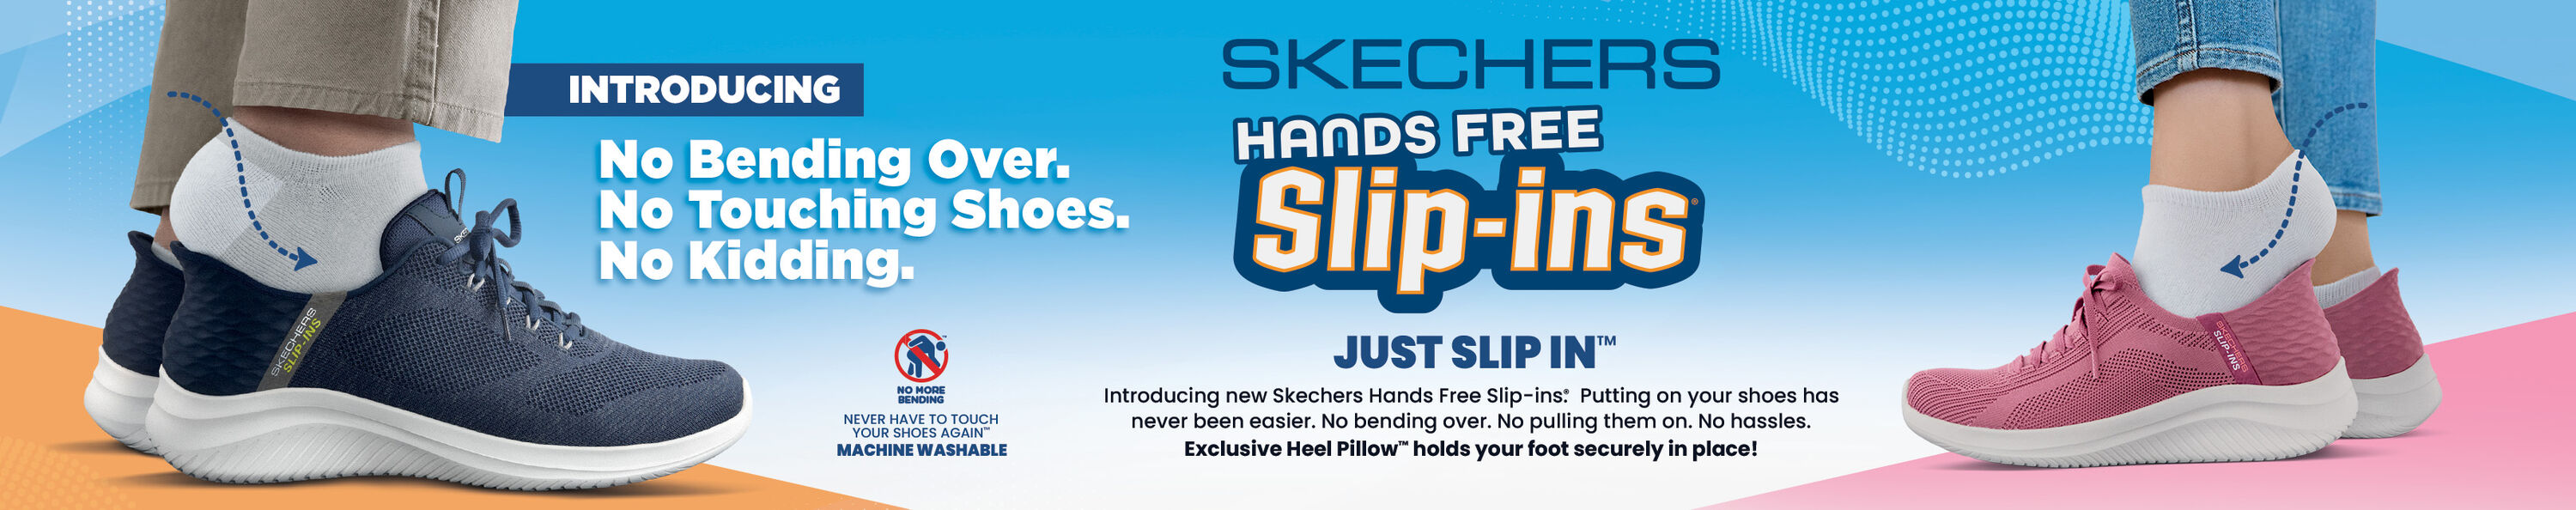 Hands Free Slip-Ins | SKECHERS